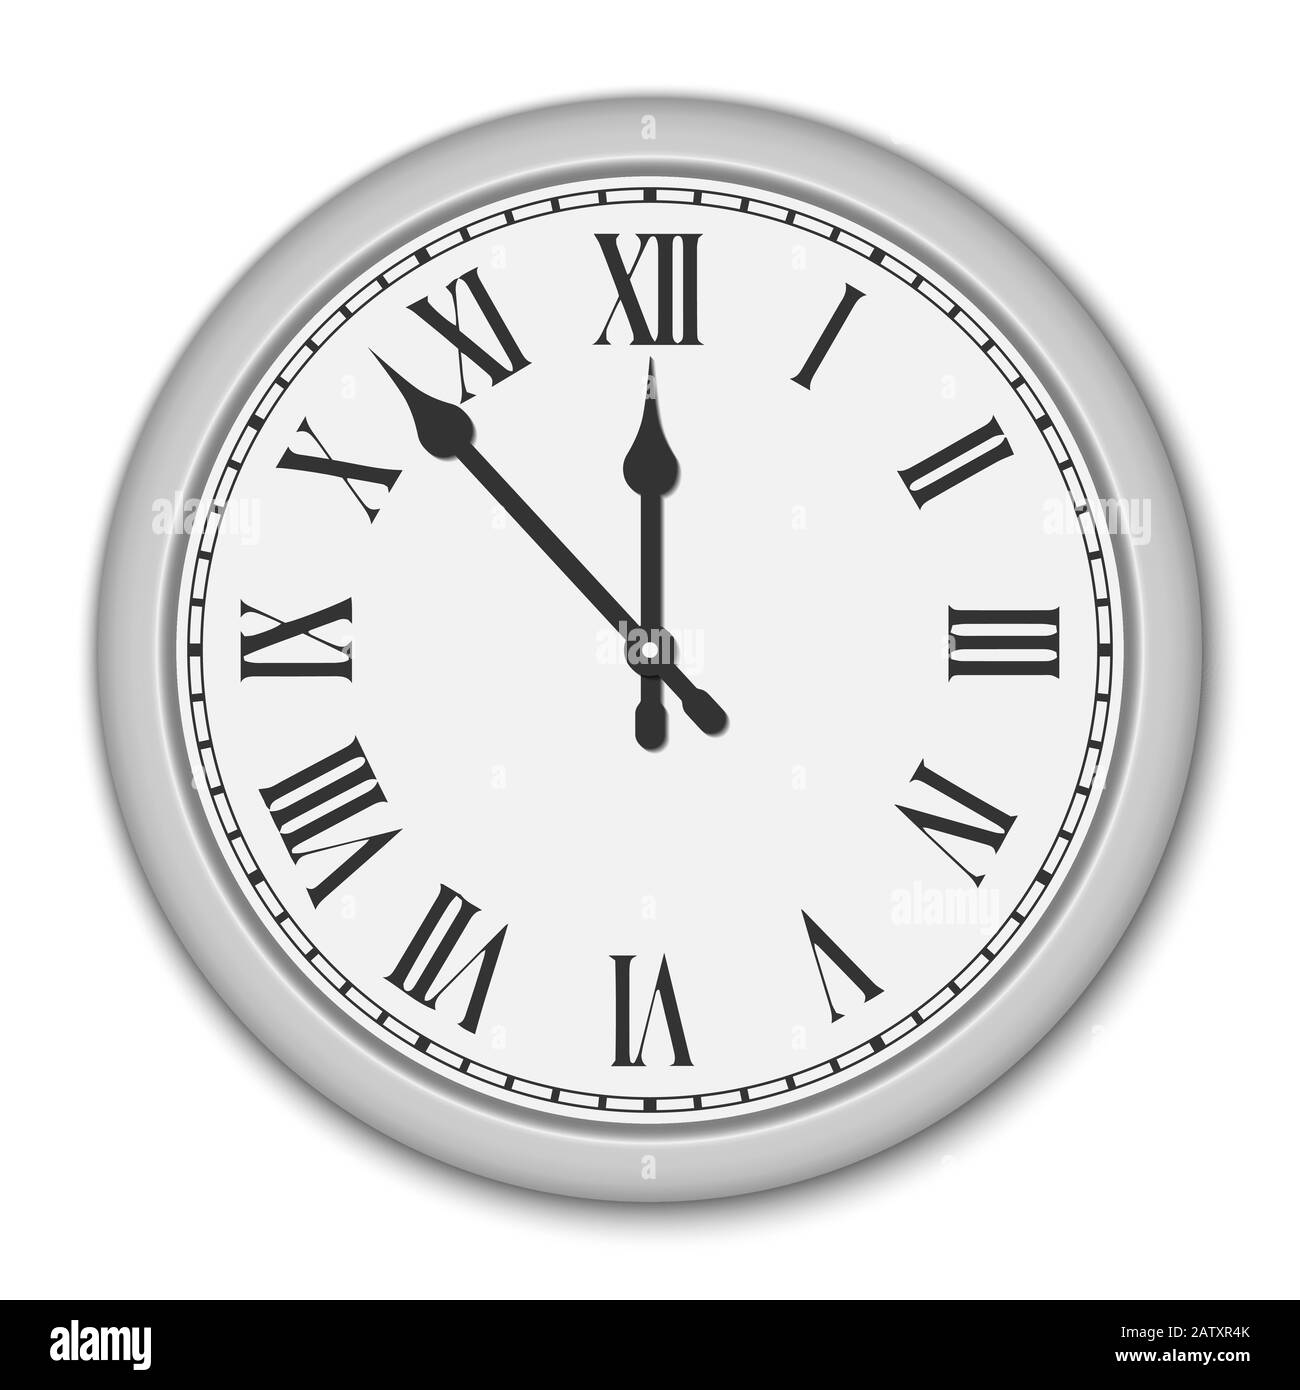 Reloj con numeros romanos Imágenes de stock en blanco y negro - Alamy